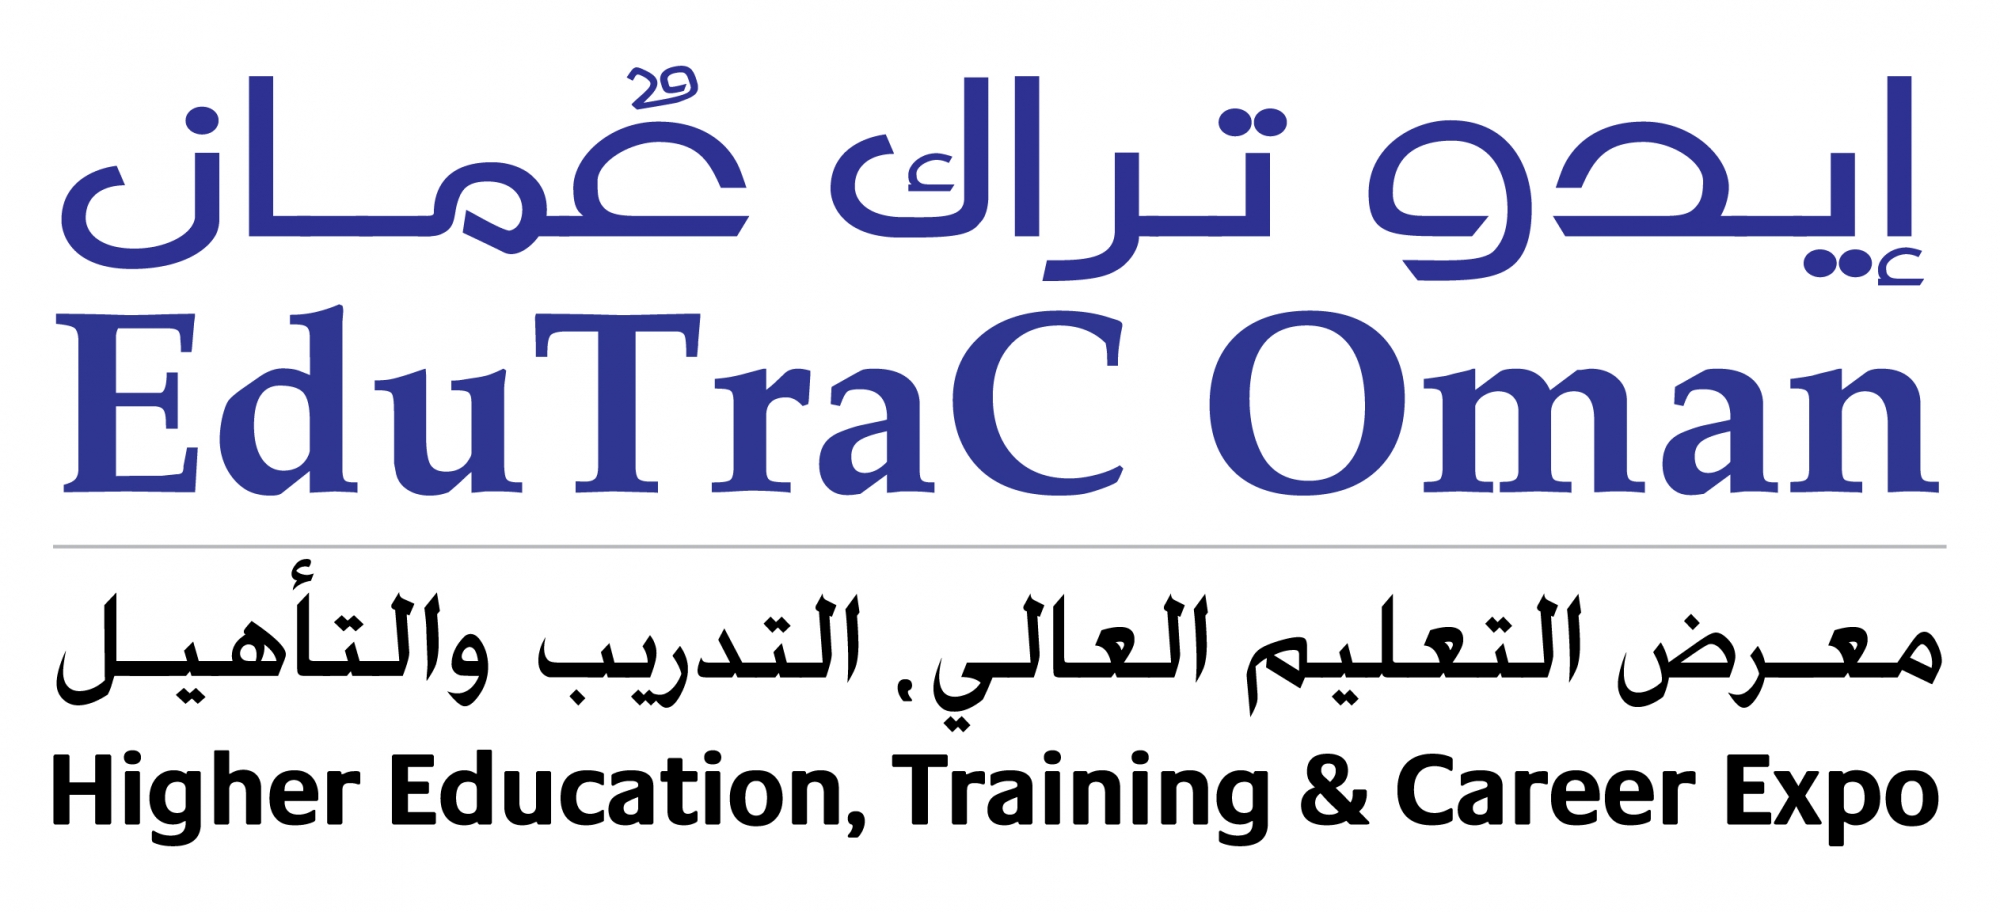 EduTraC Oman Logo